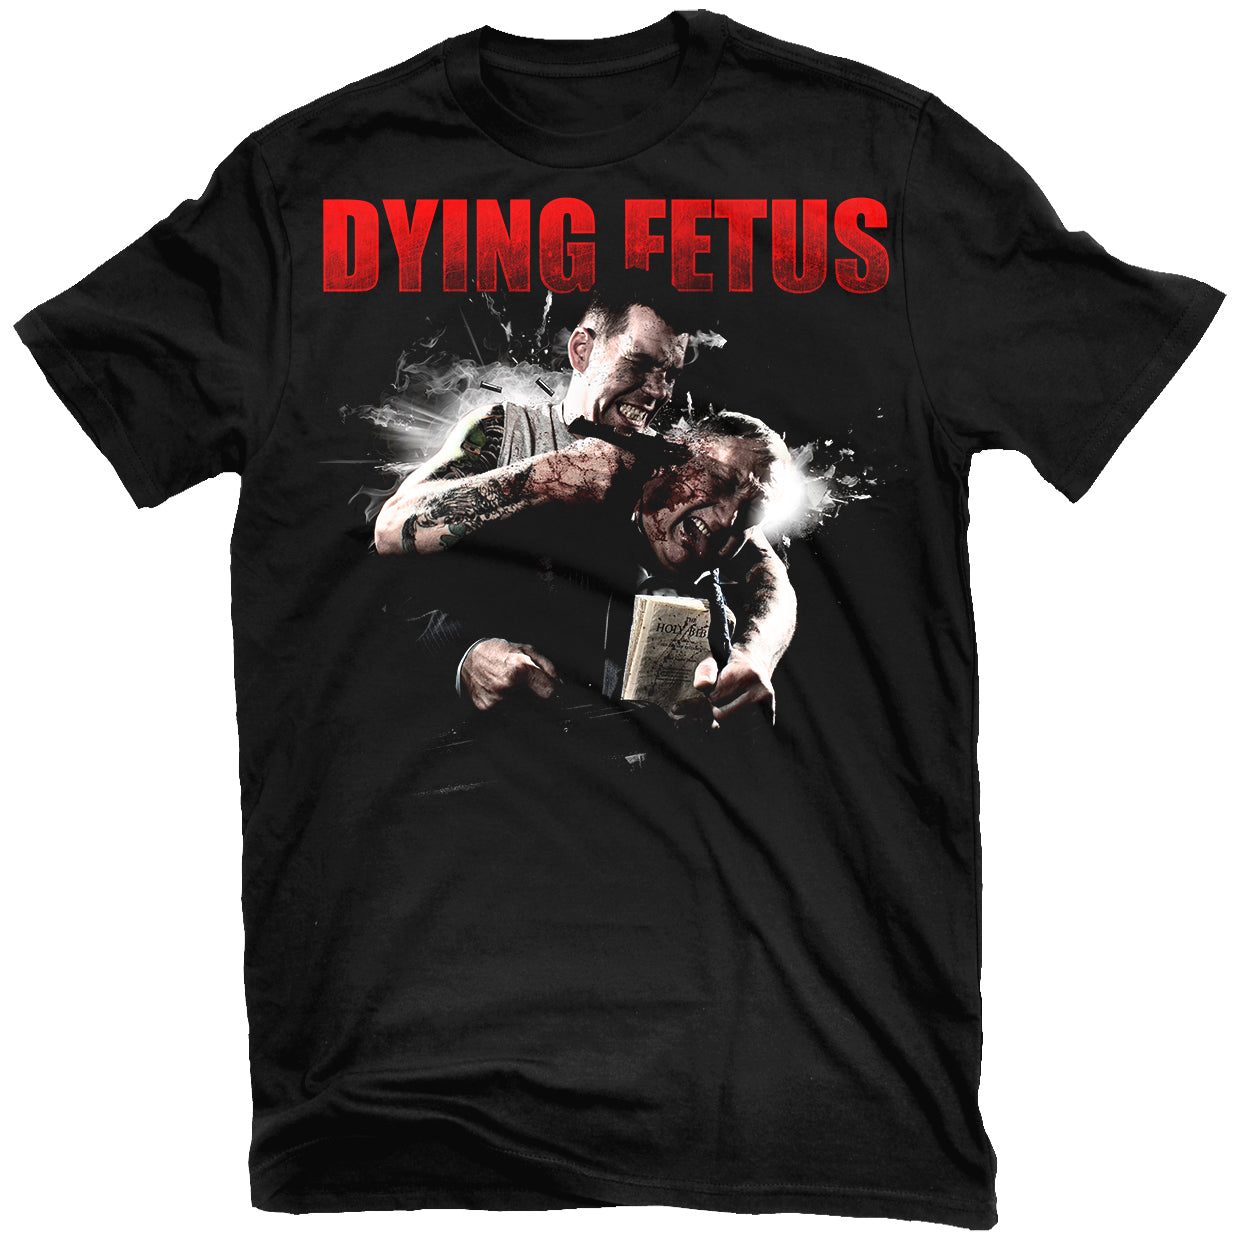 Dying Fetus "Your Treachery" T-Shirt